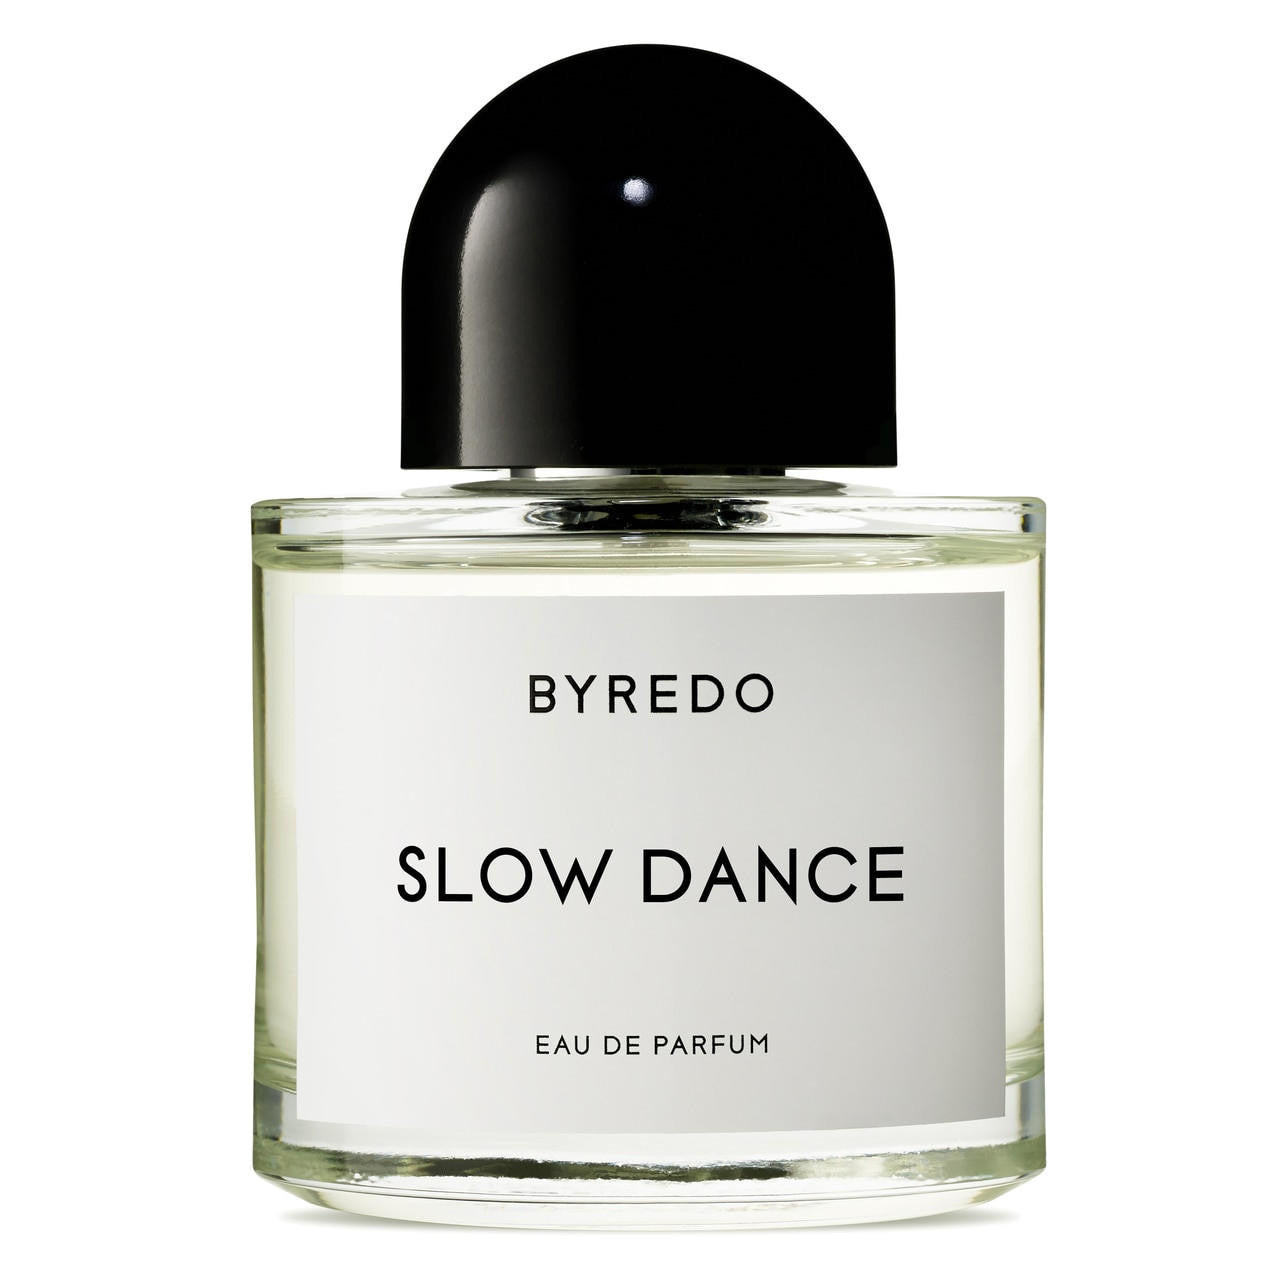  BYREDO SLOW DANCE Eau de Parfum 